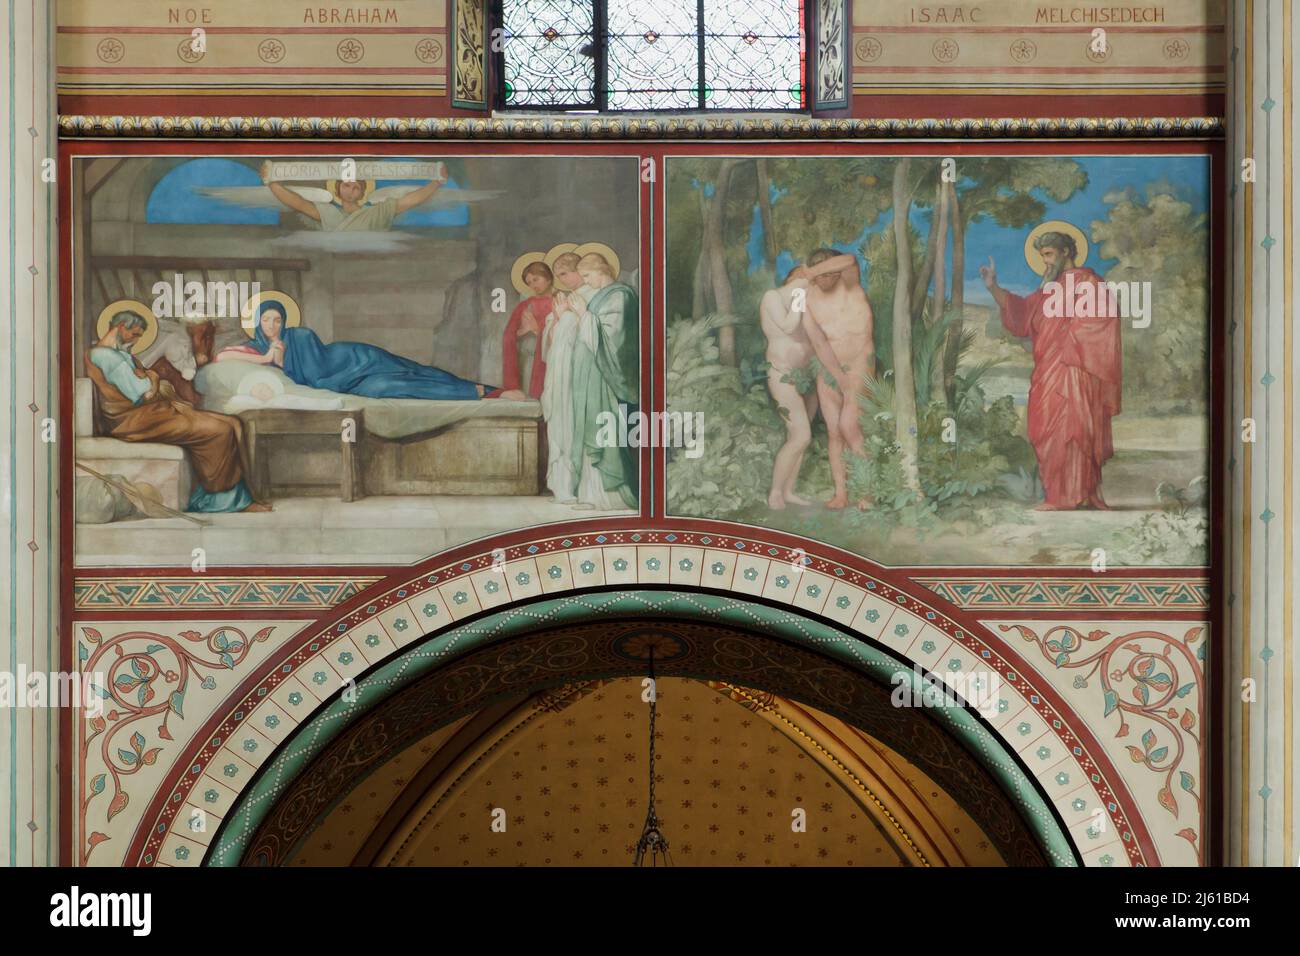 La Nativité de Jésus et l'expulsion du Paradis représentées dans les peintures murales du peintre français Jean-Hippolyte Flandrin (1856-1863) dans l'église Saint-Germain-des-Prés à Paris, France. Banque D'Images